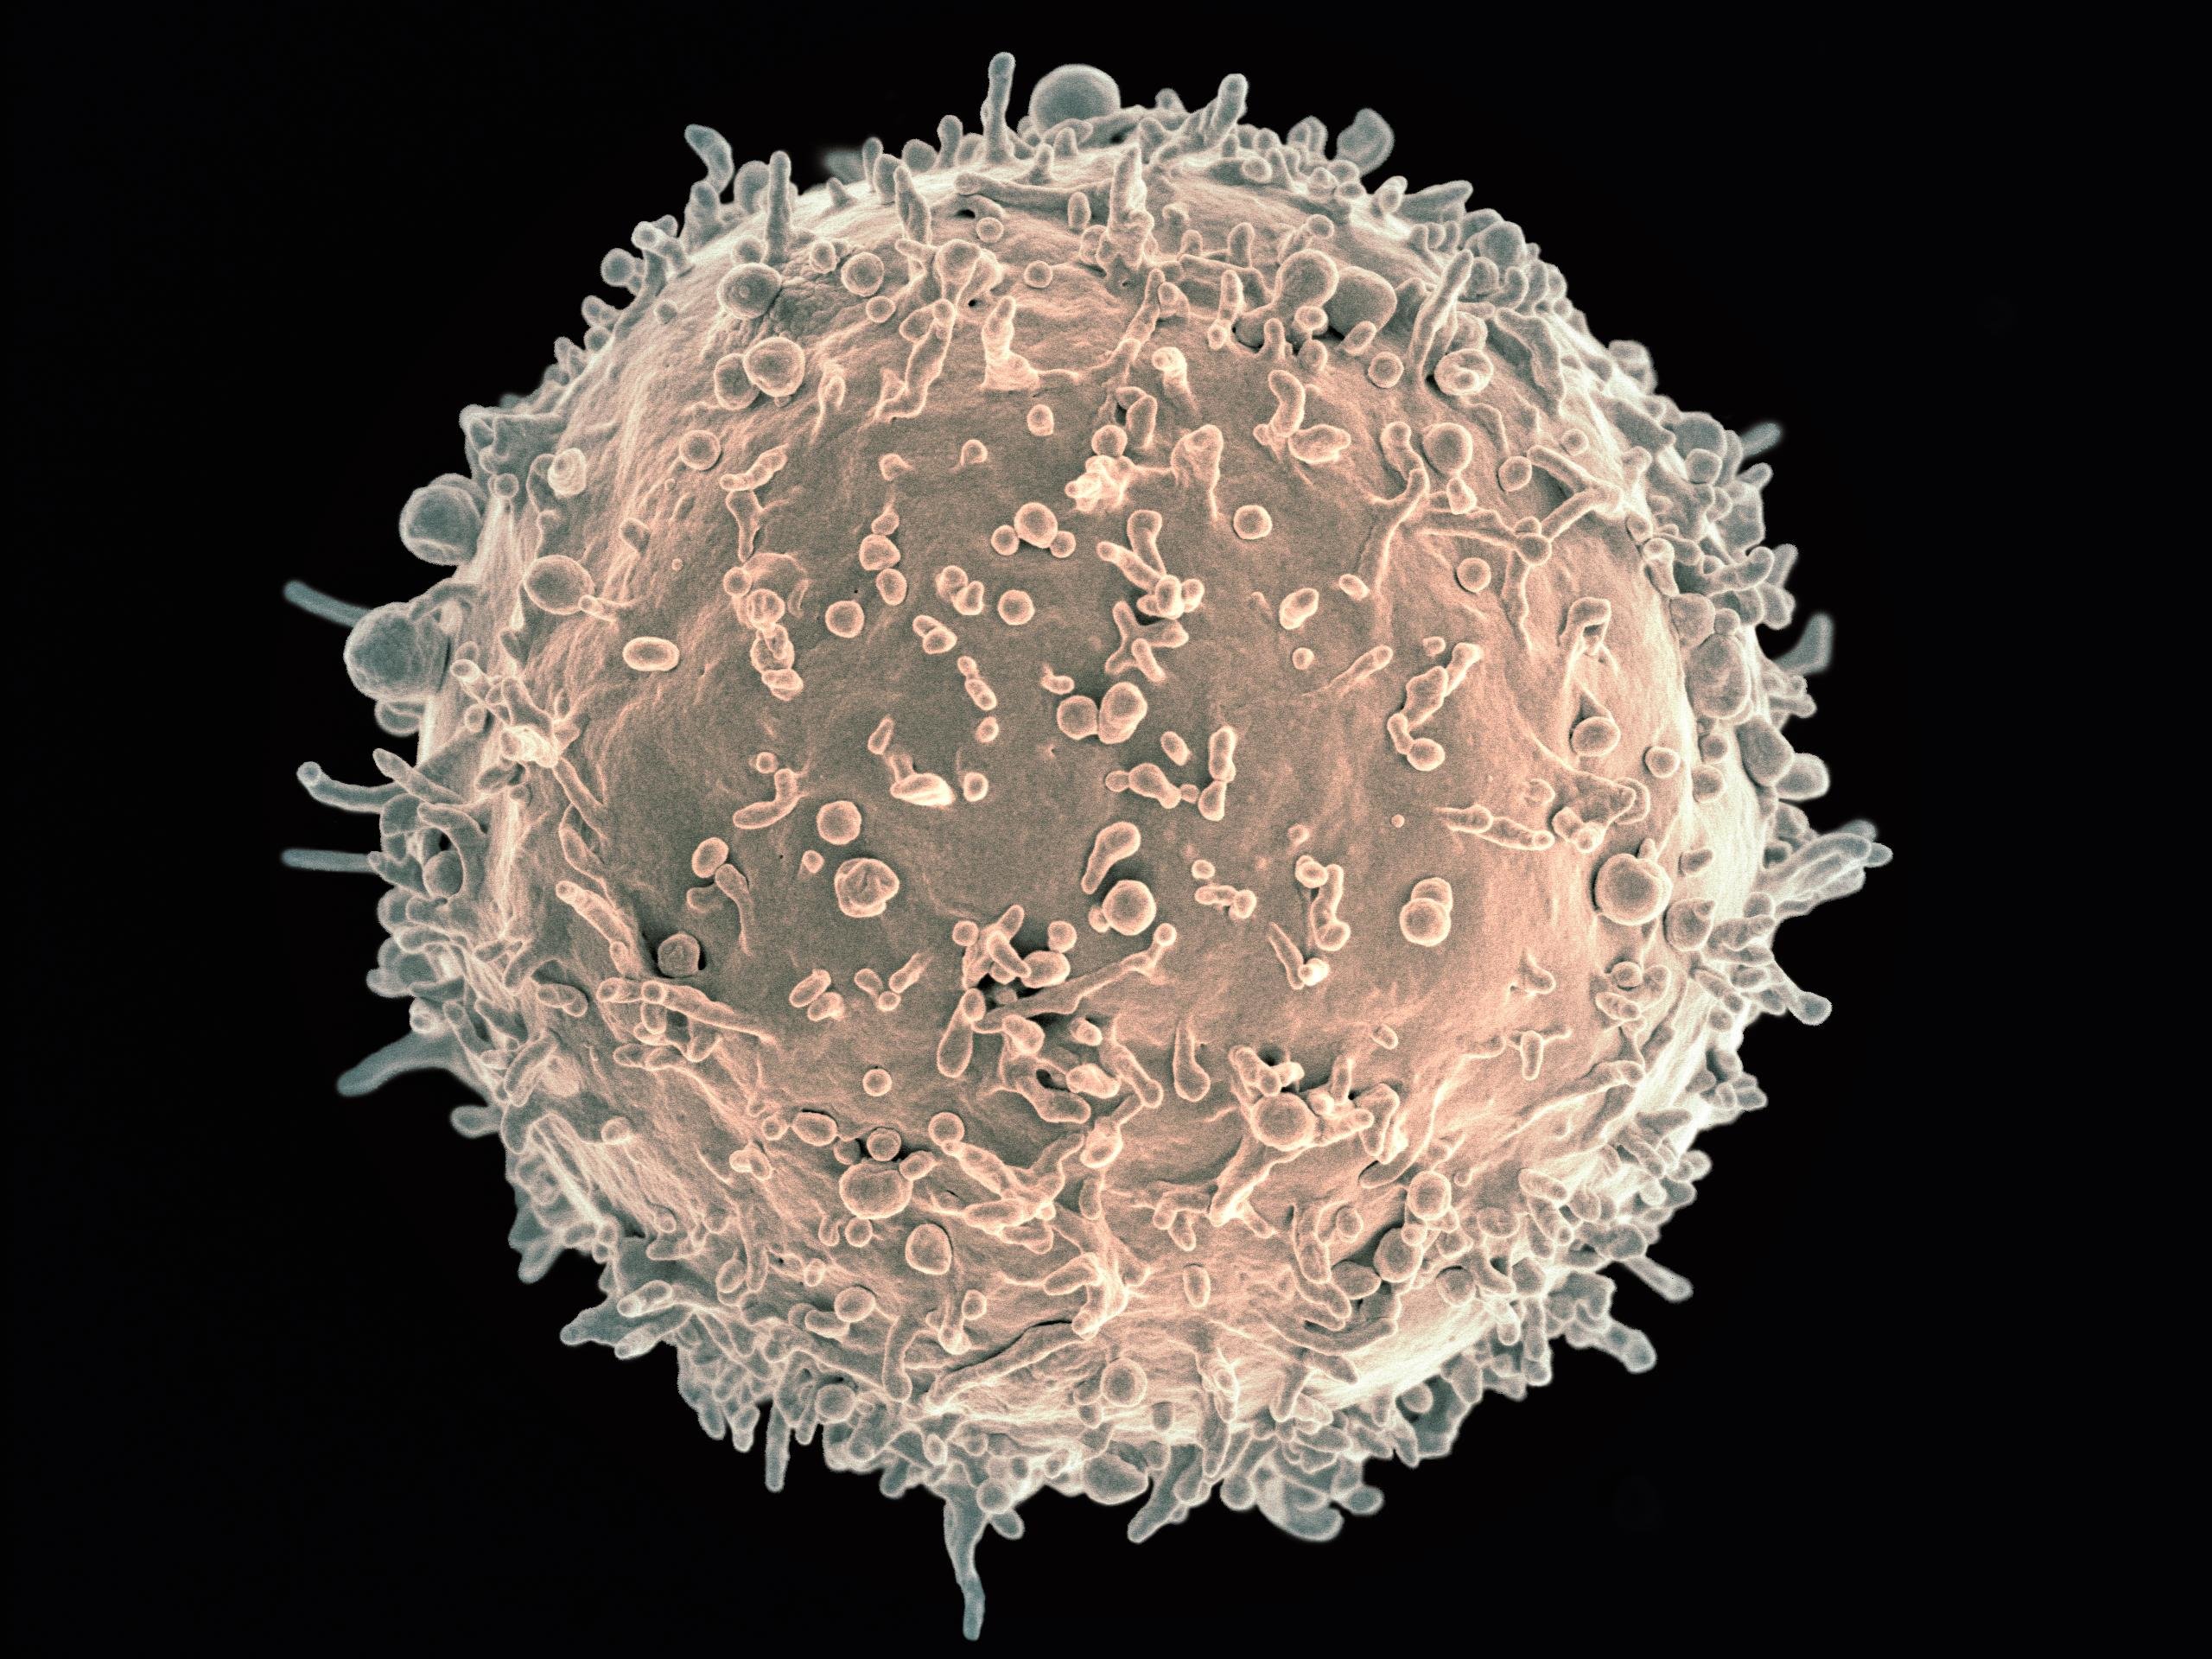 Б клетки. Лимфоциты. Т лимфоциты под микроскопом. B лимфоциты под микроскопом. Т-лимфоциты (b-клетки).